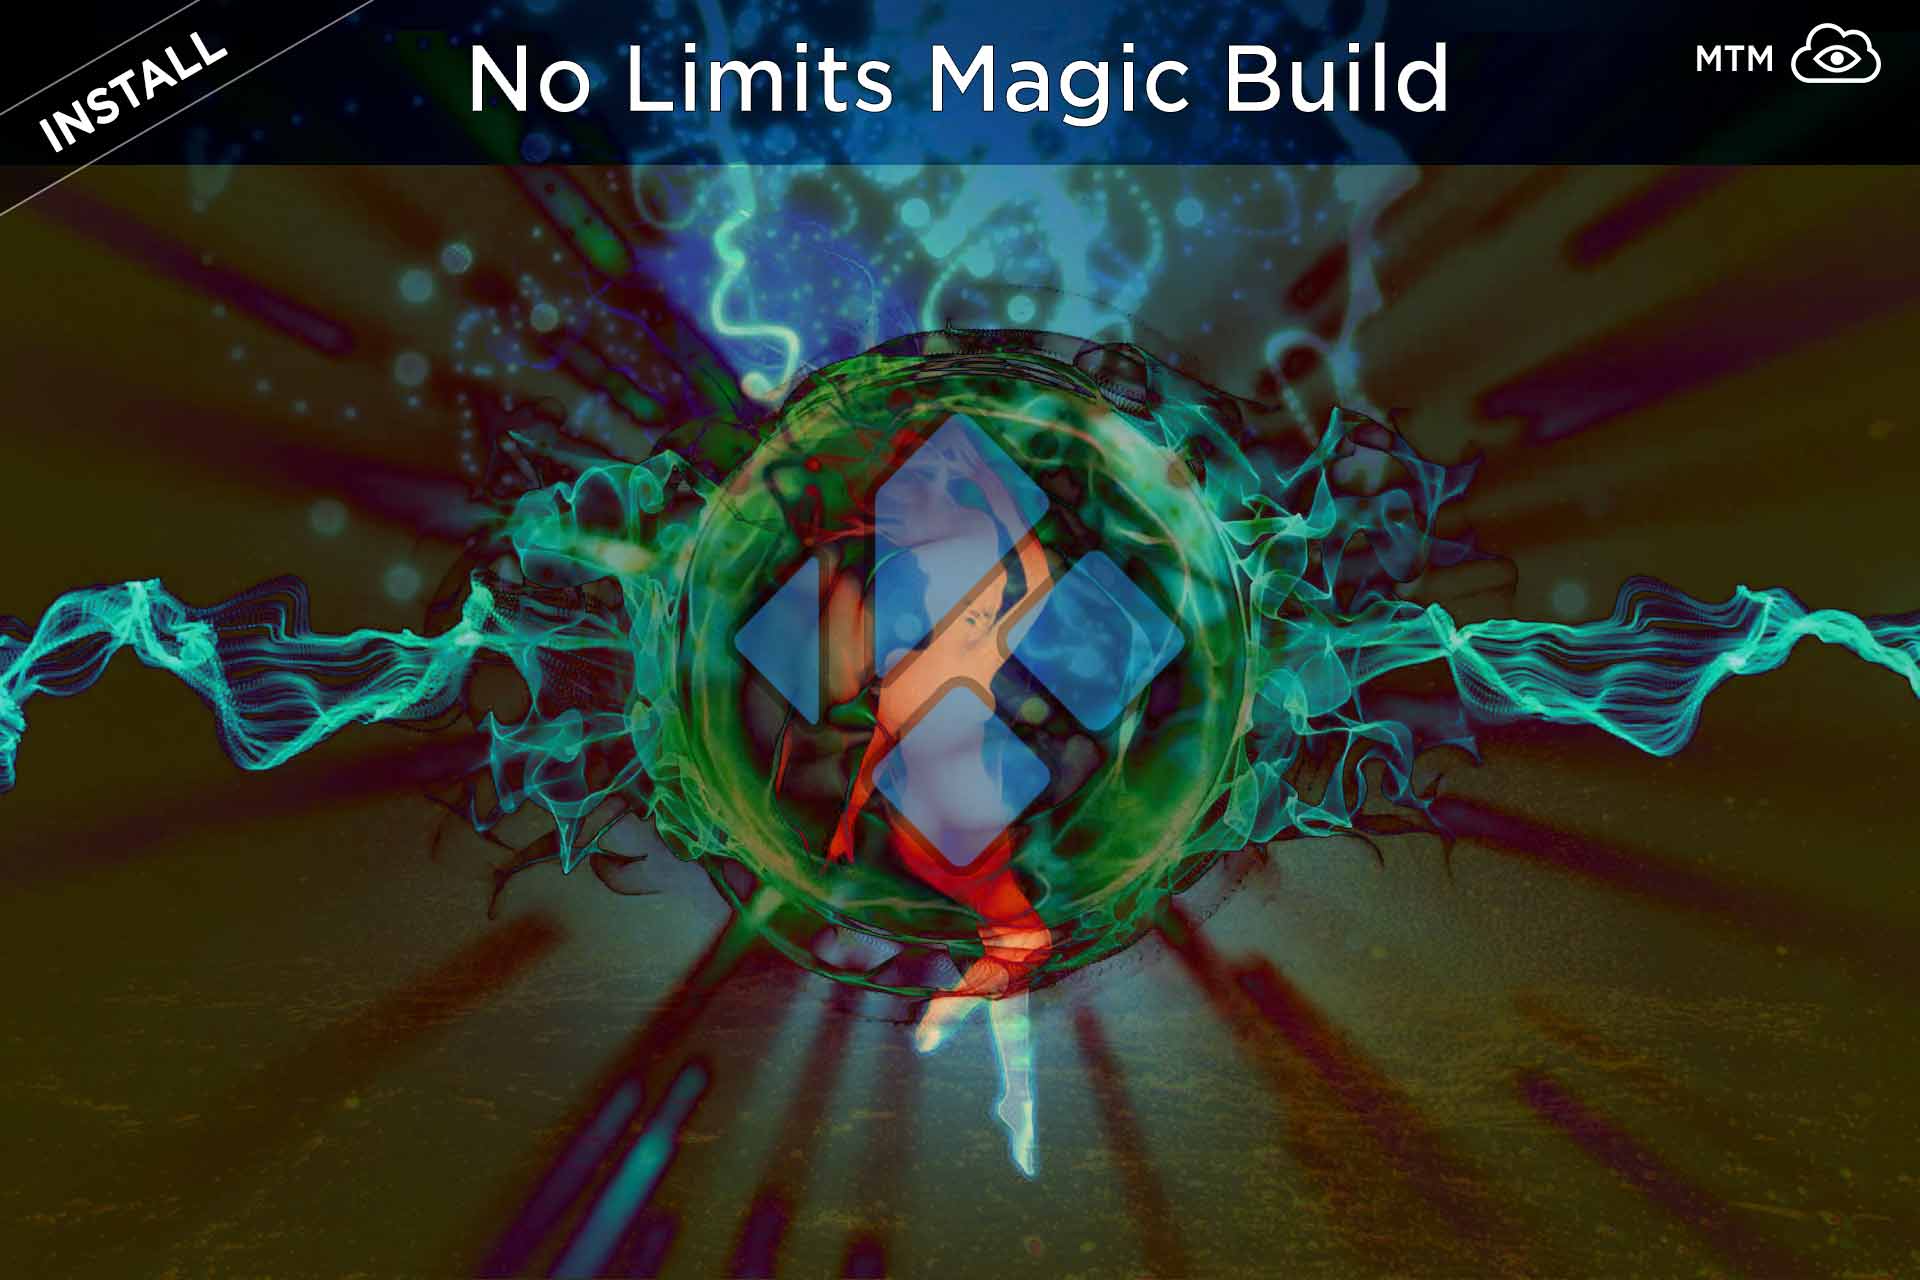 Blue Film Xxx 1gb - How to Install No Limits Magic Kodi Builds [New 2020 Update]